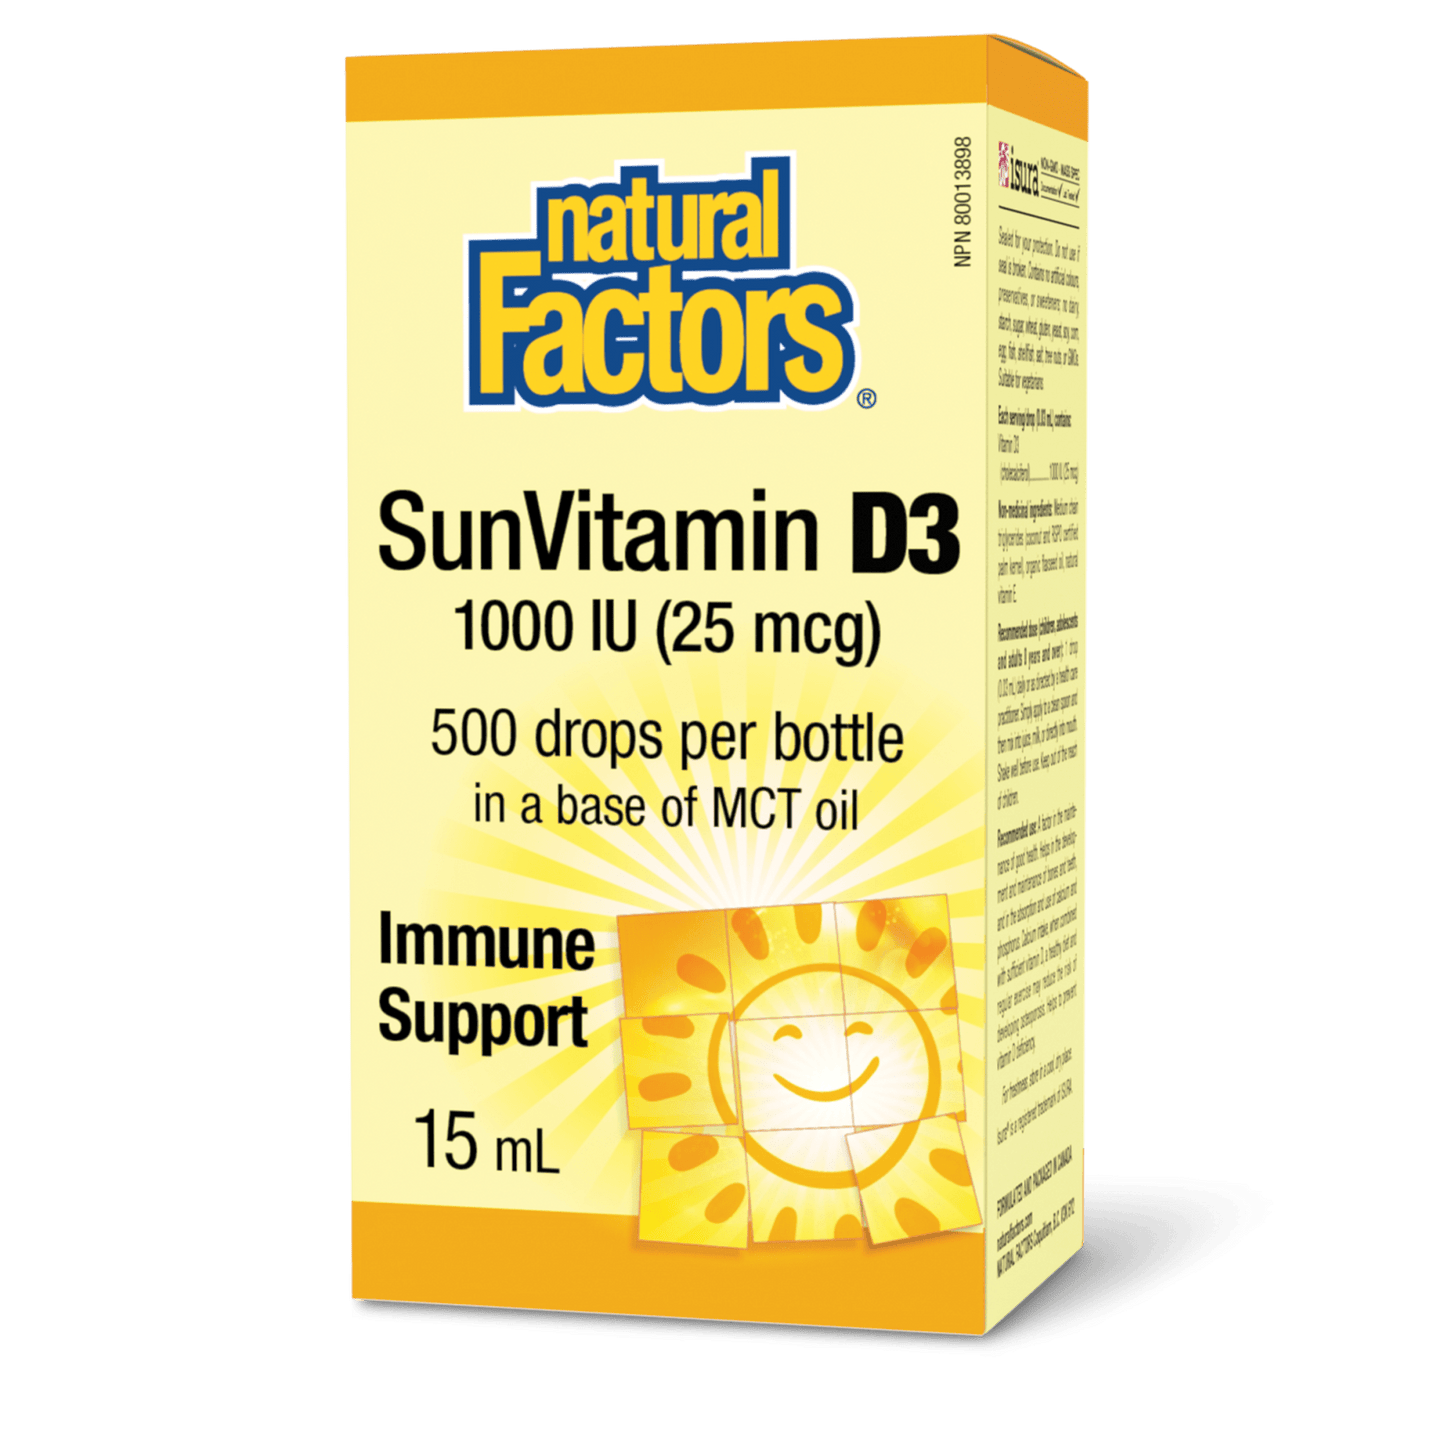 SunVitamin D3 Drops 1000 IU, Natural Factors|v|image|1055